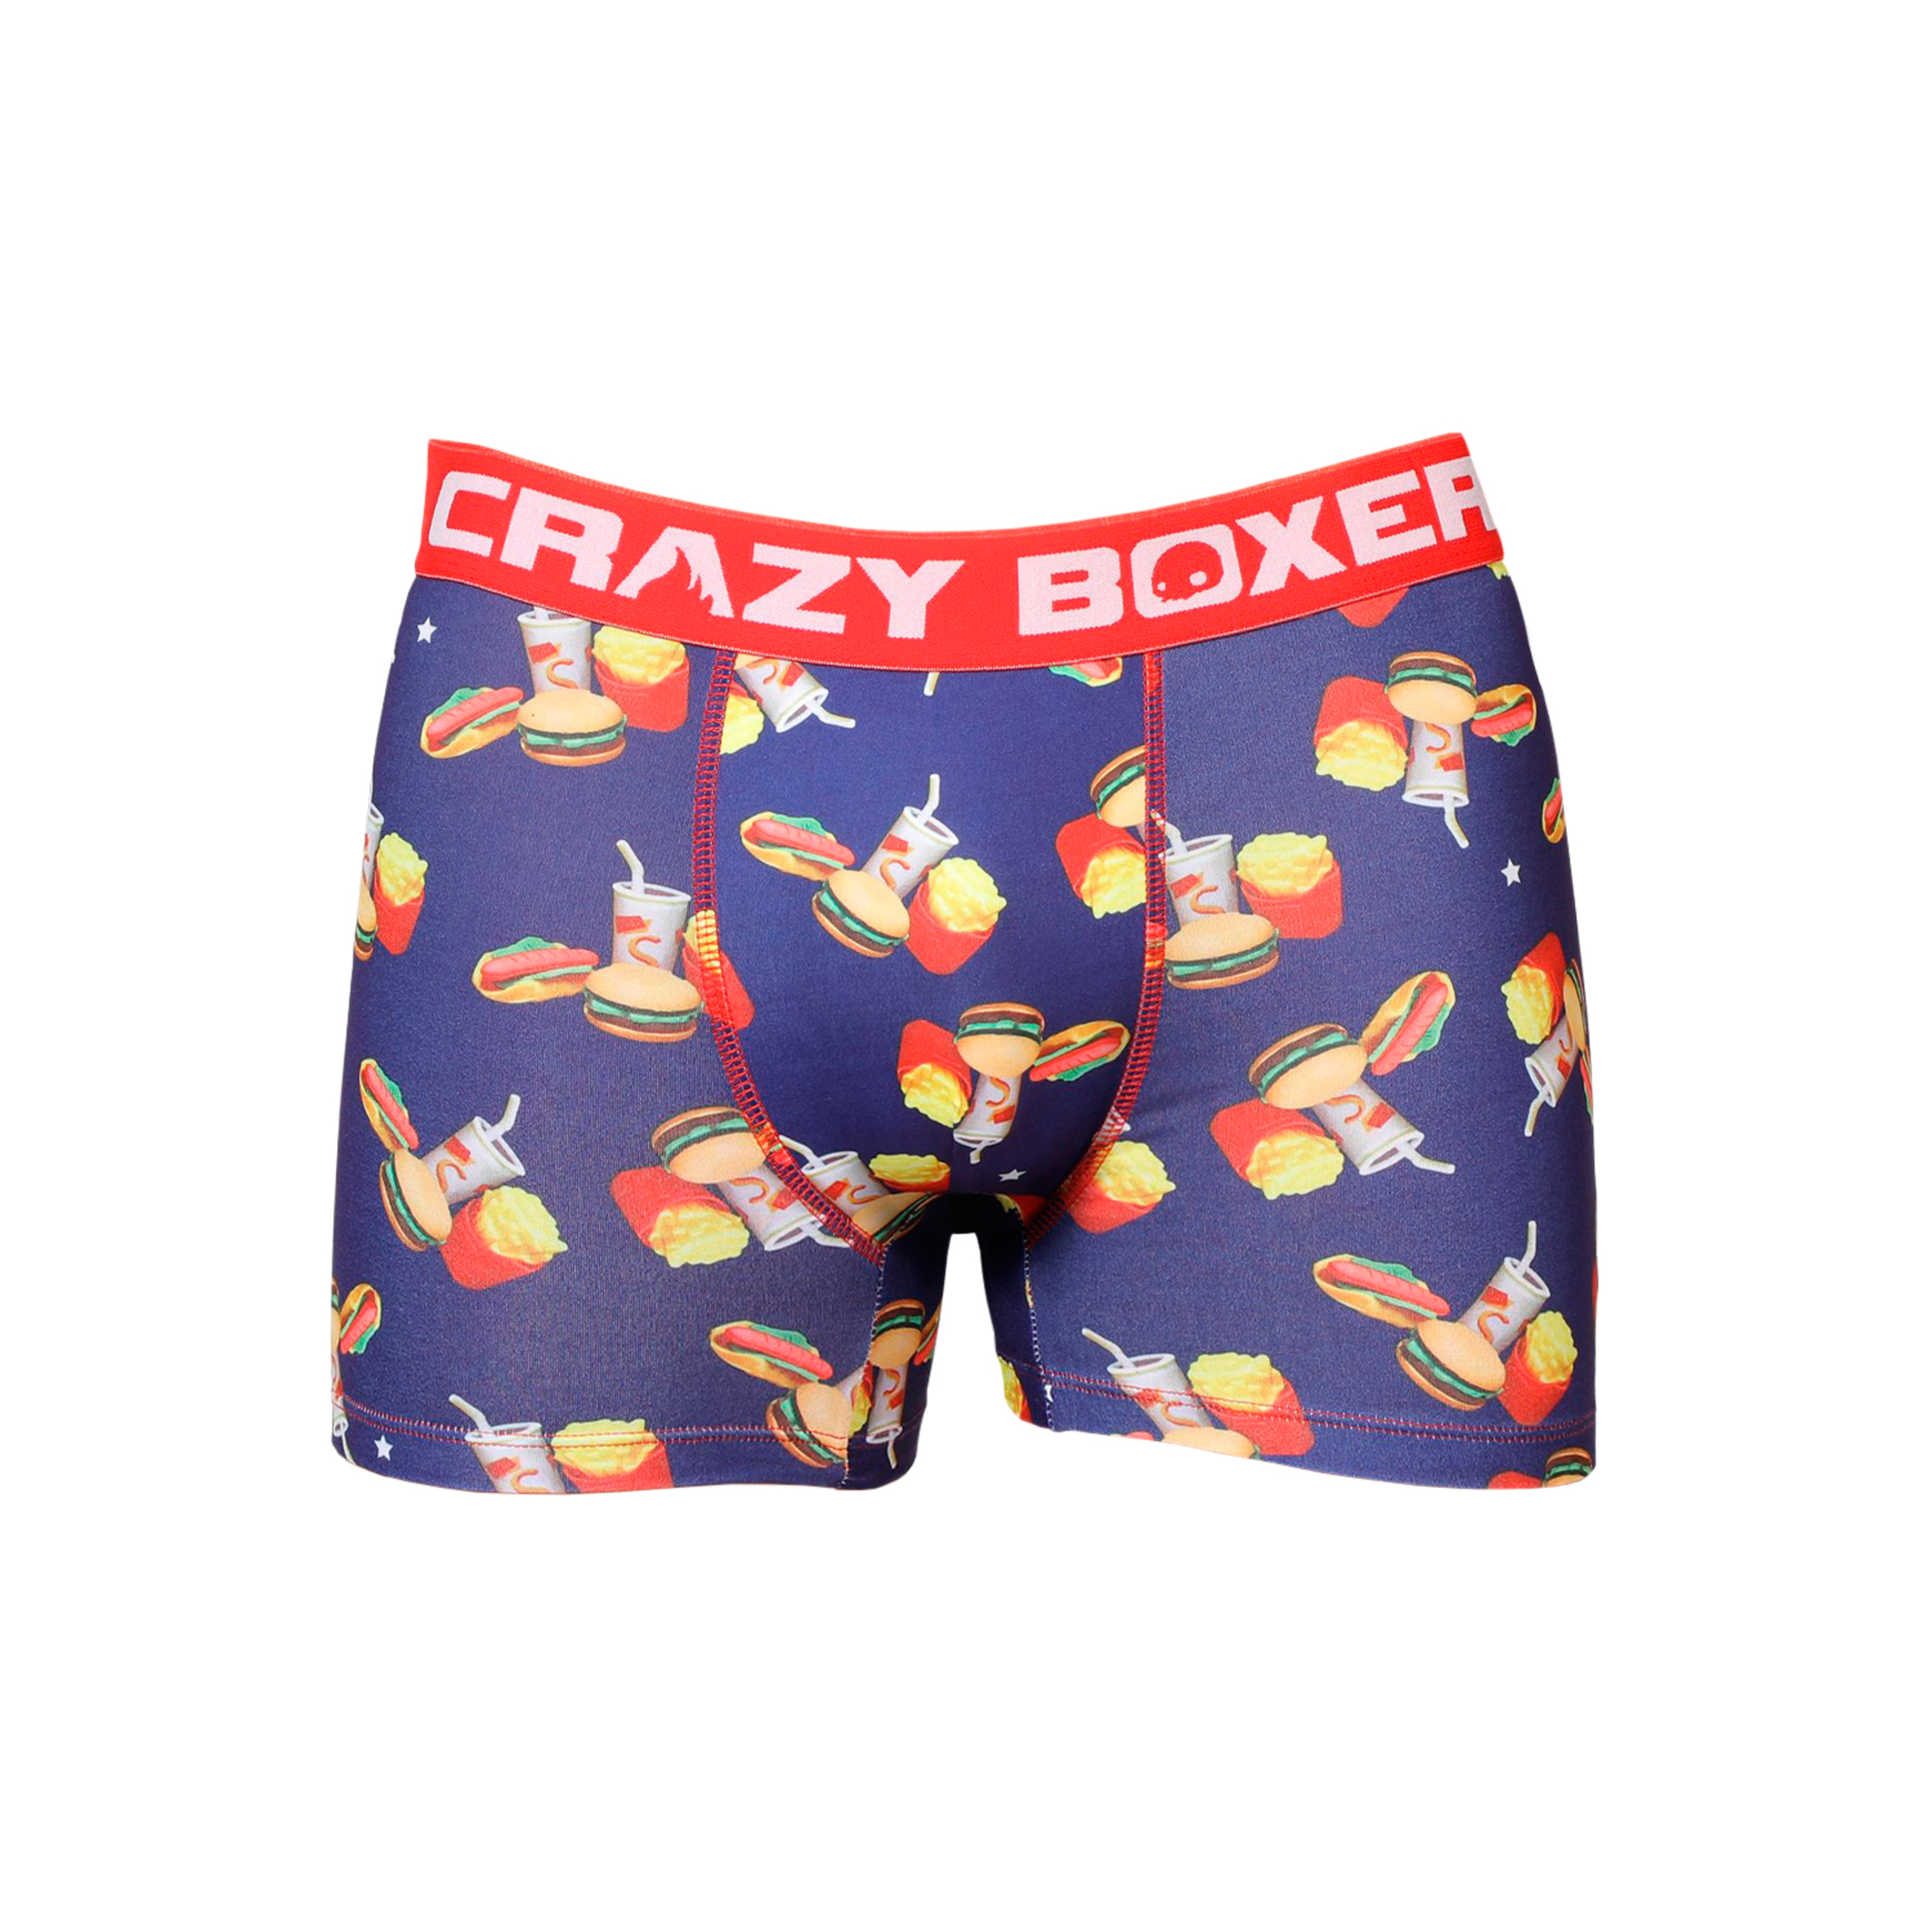 Cueca Crazy Boxer Hambúrgueres - multicolor - 